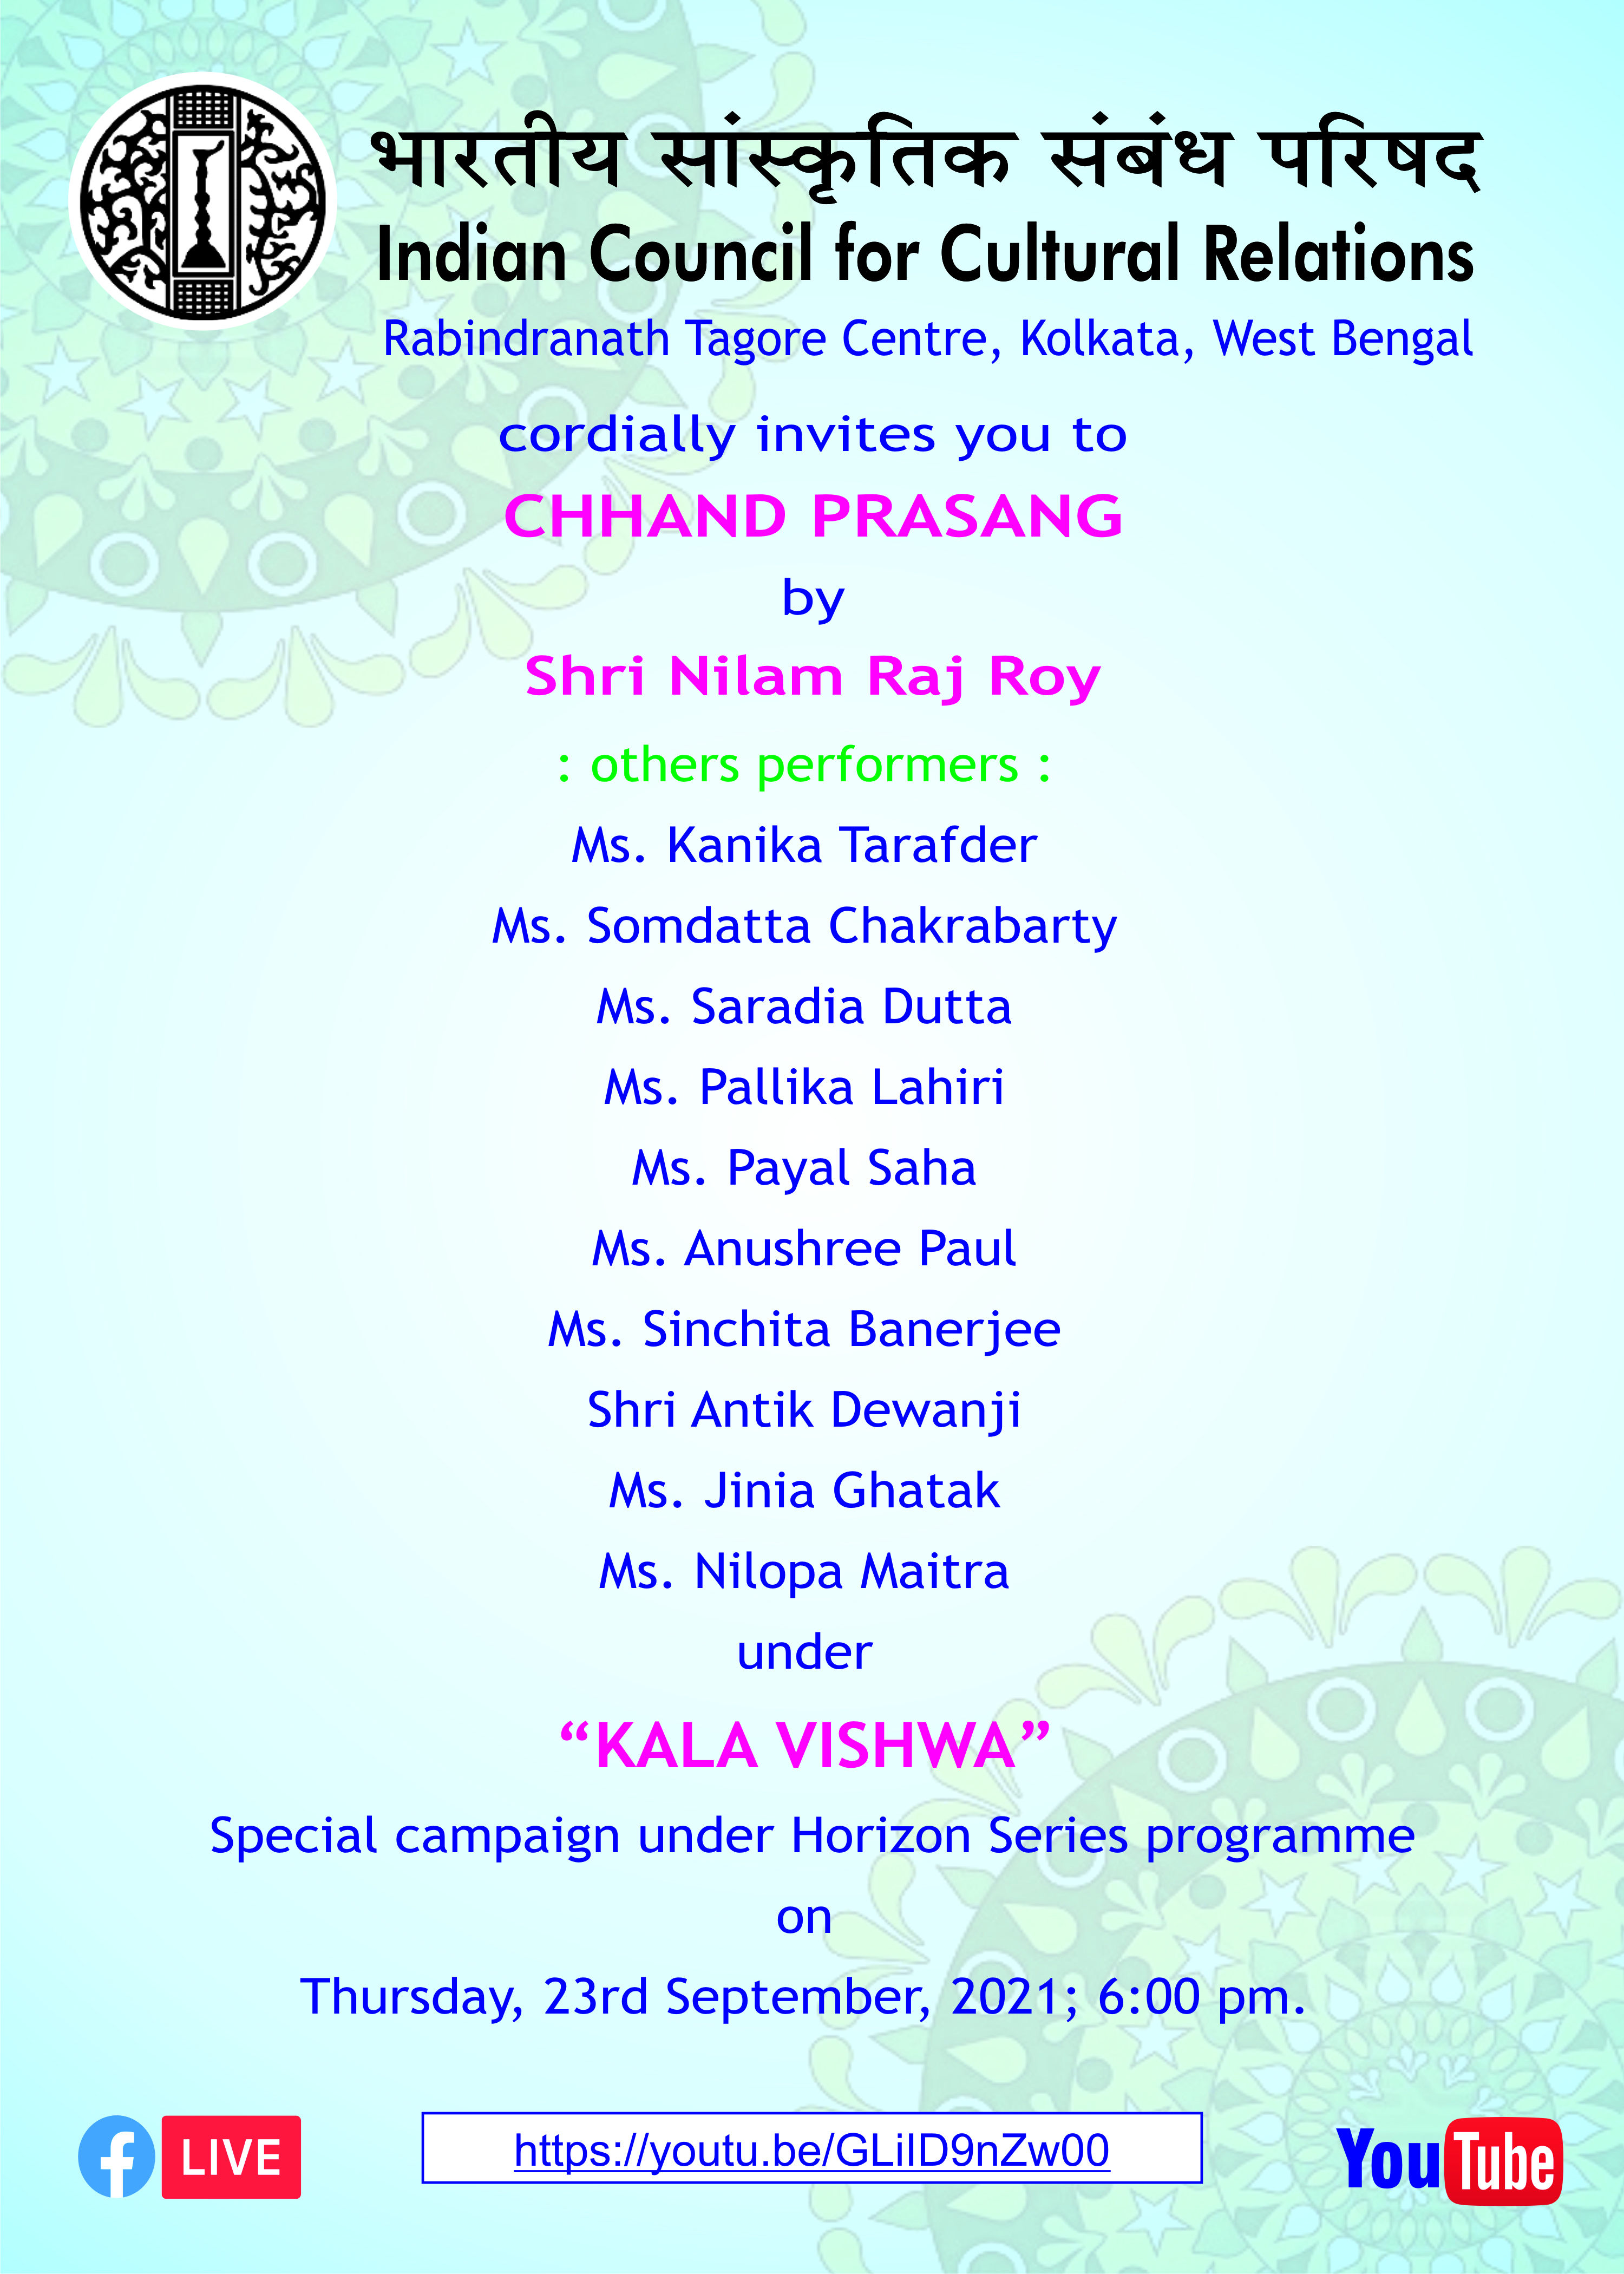 भारतीय सांस्कृतिक संबंध परिषद (आईसीसीआर), क्षेत्रीय कार्यालय, कोलकाता श्री द्वारा "कला विश्व": क्षितिज श्रृंखला "छंद प्रसाद" के तहत एक विशेष अभियान में आपको सादर आमंत्रित करता है। नीलम राज रॉय गुरुवार, 23 सितंबर, 2021 को शाम 6.00 बजे।